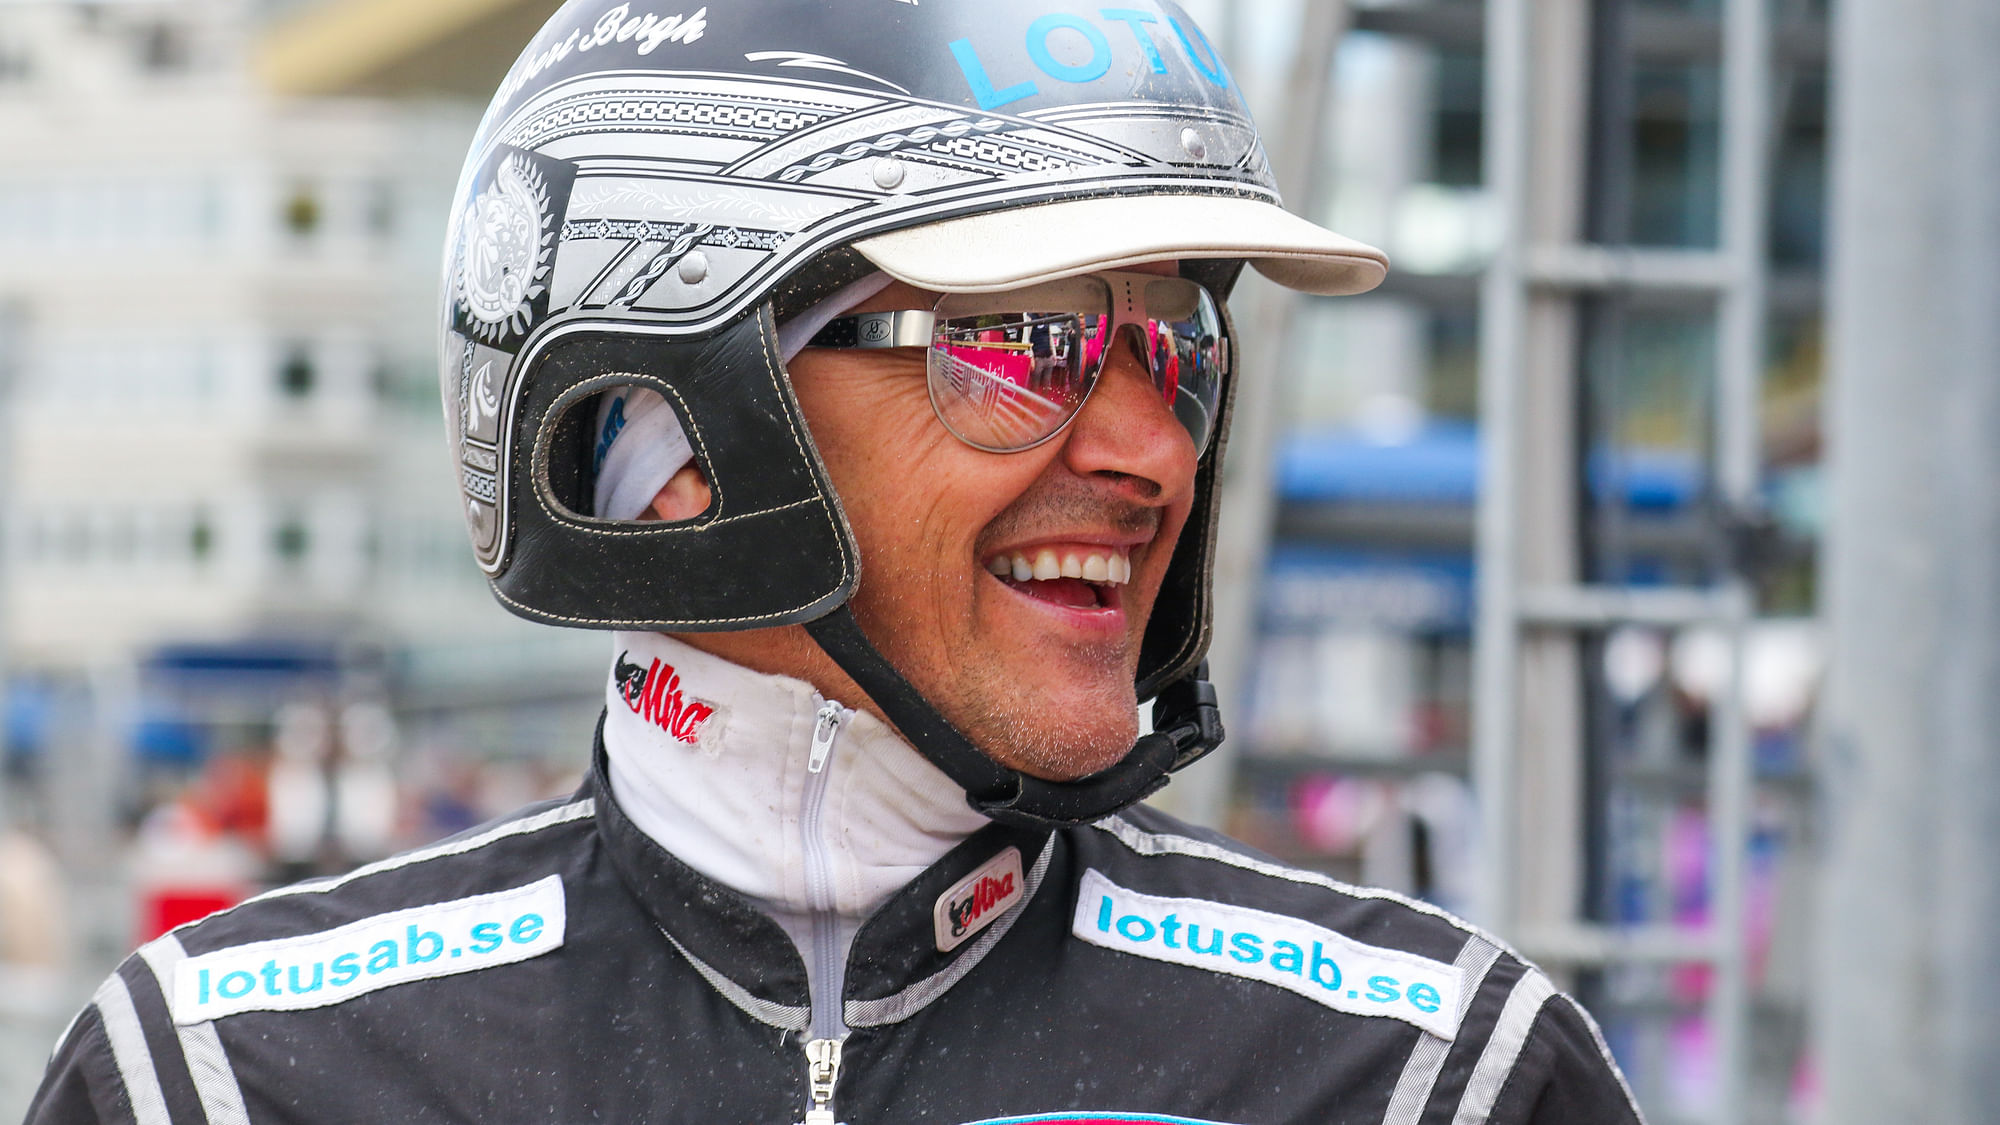 Robert Bergh sai hymyillä Elitloppet-perjantaina voittajakehässä.